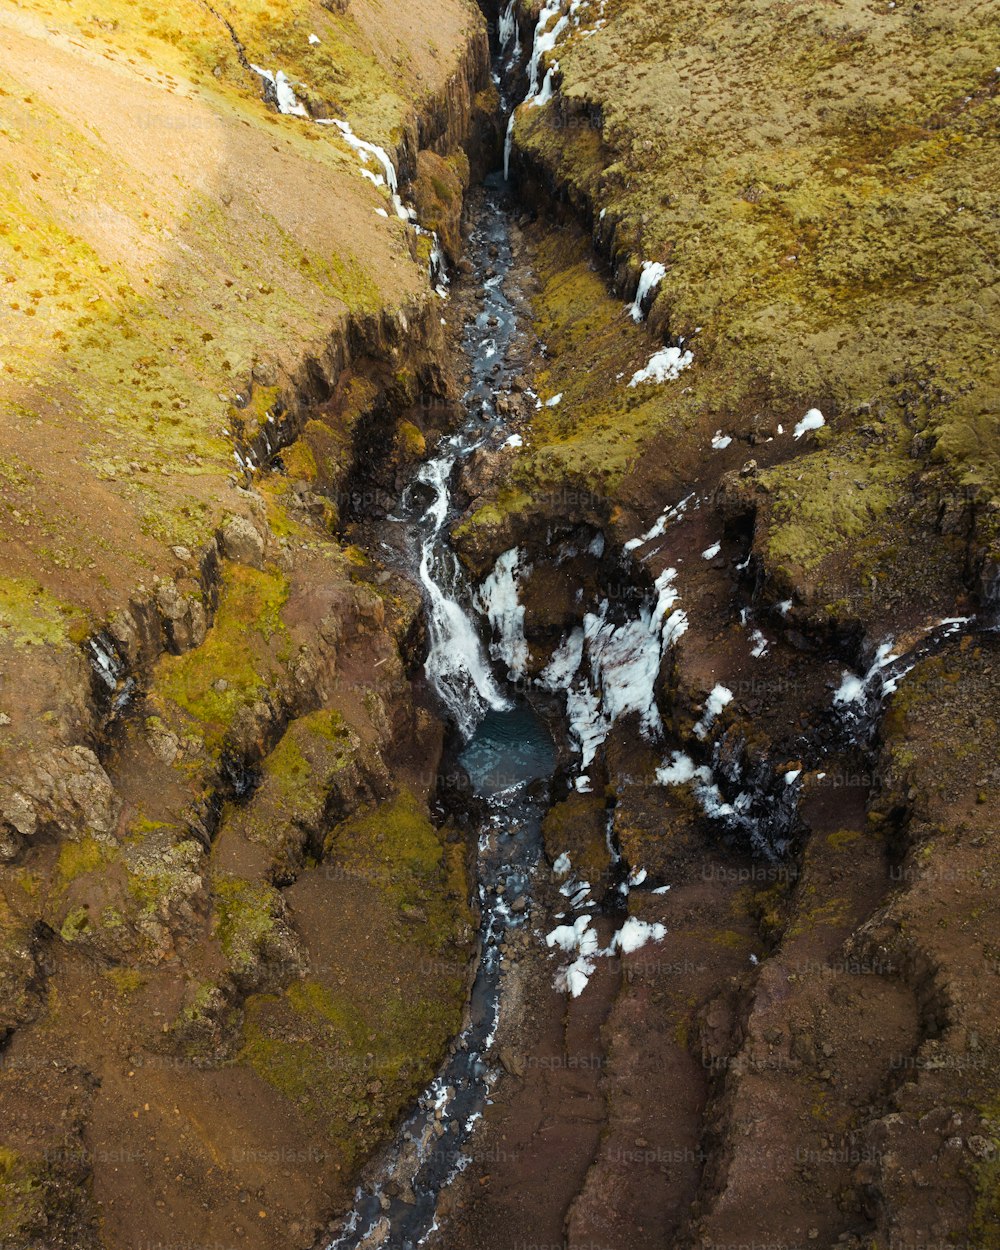 Vue aérienne d’un ruisseau traversant une vallée